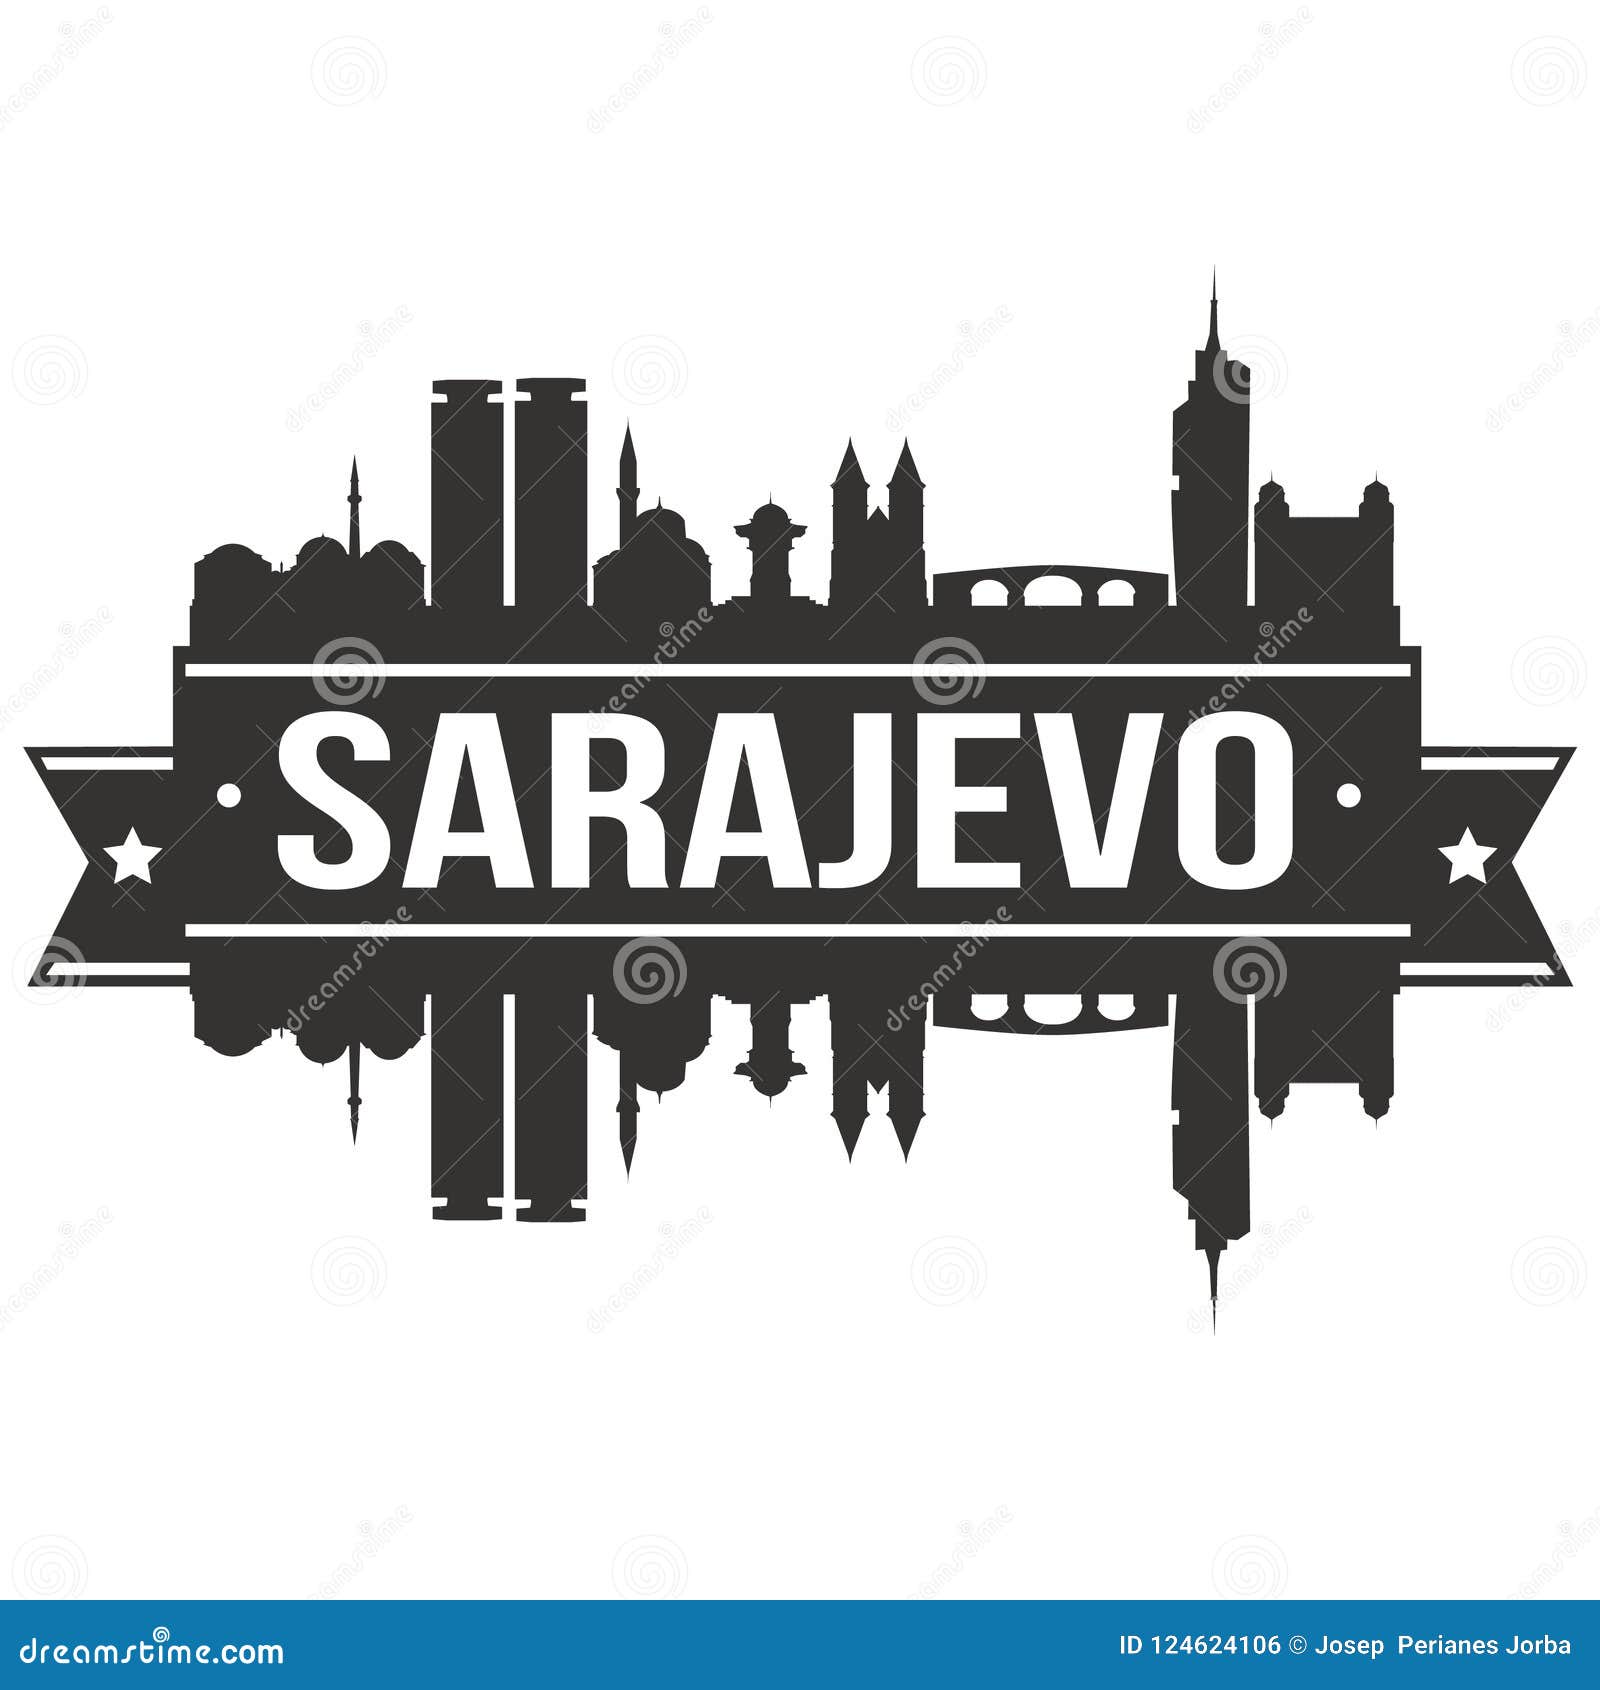 sarajevo bosnia herzegovina round icon  art flat shadow  skyline city silhouette template logo